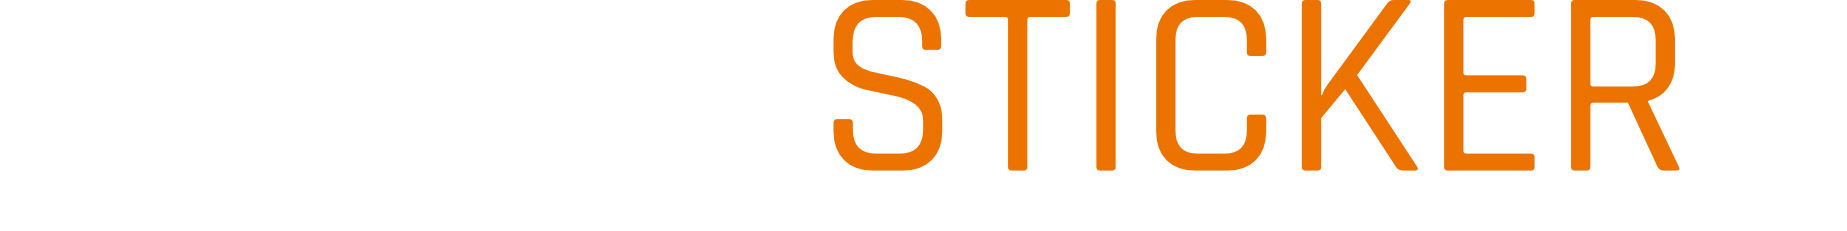 GAMINGSTICKER_Logo